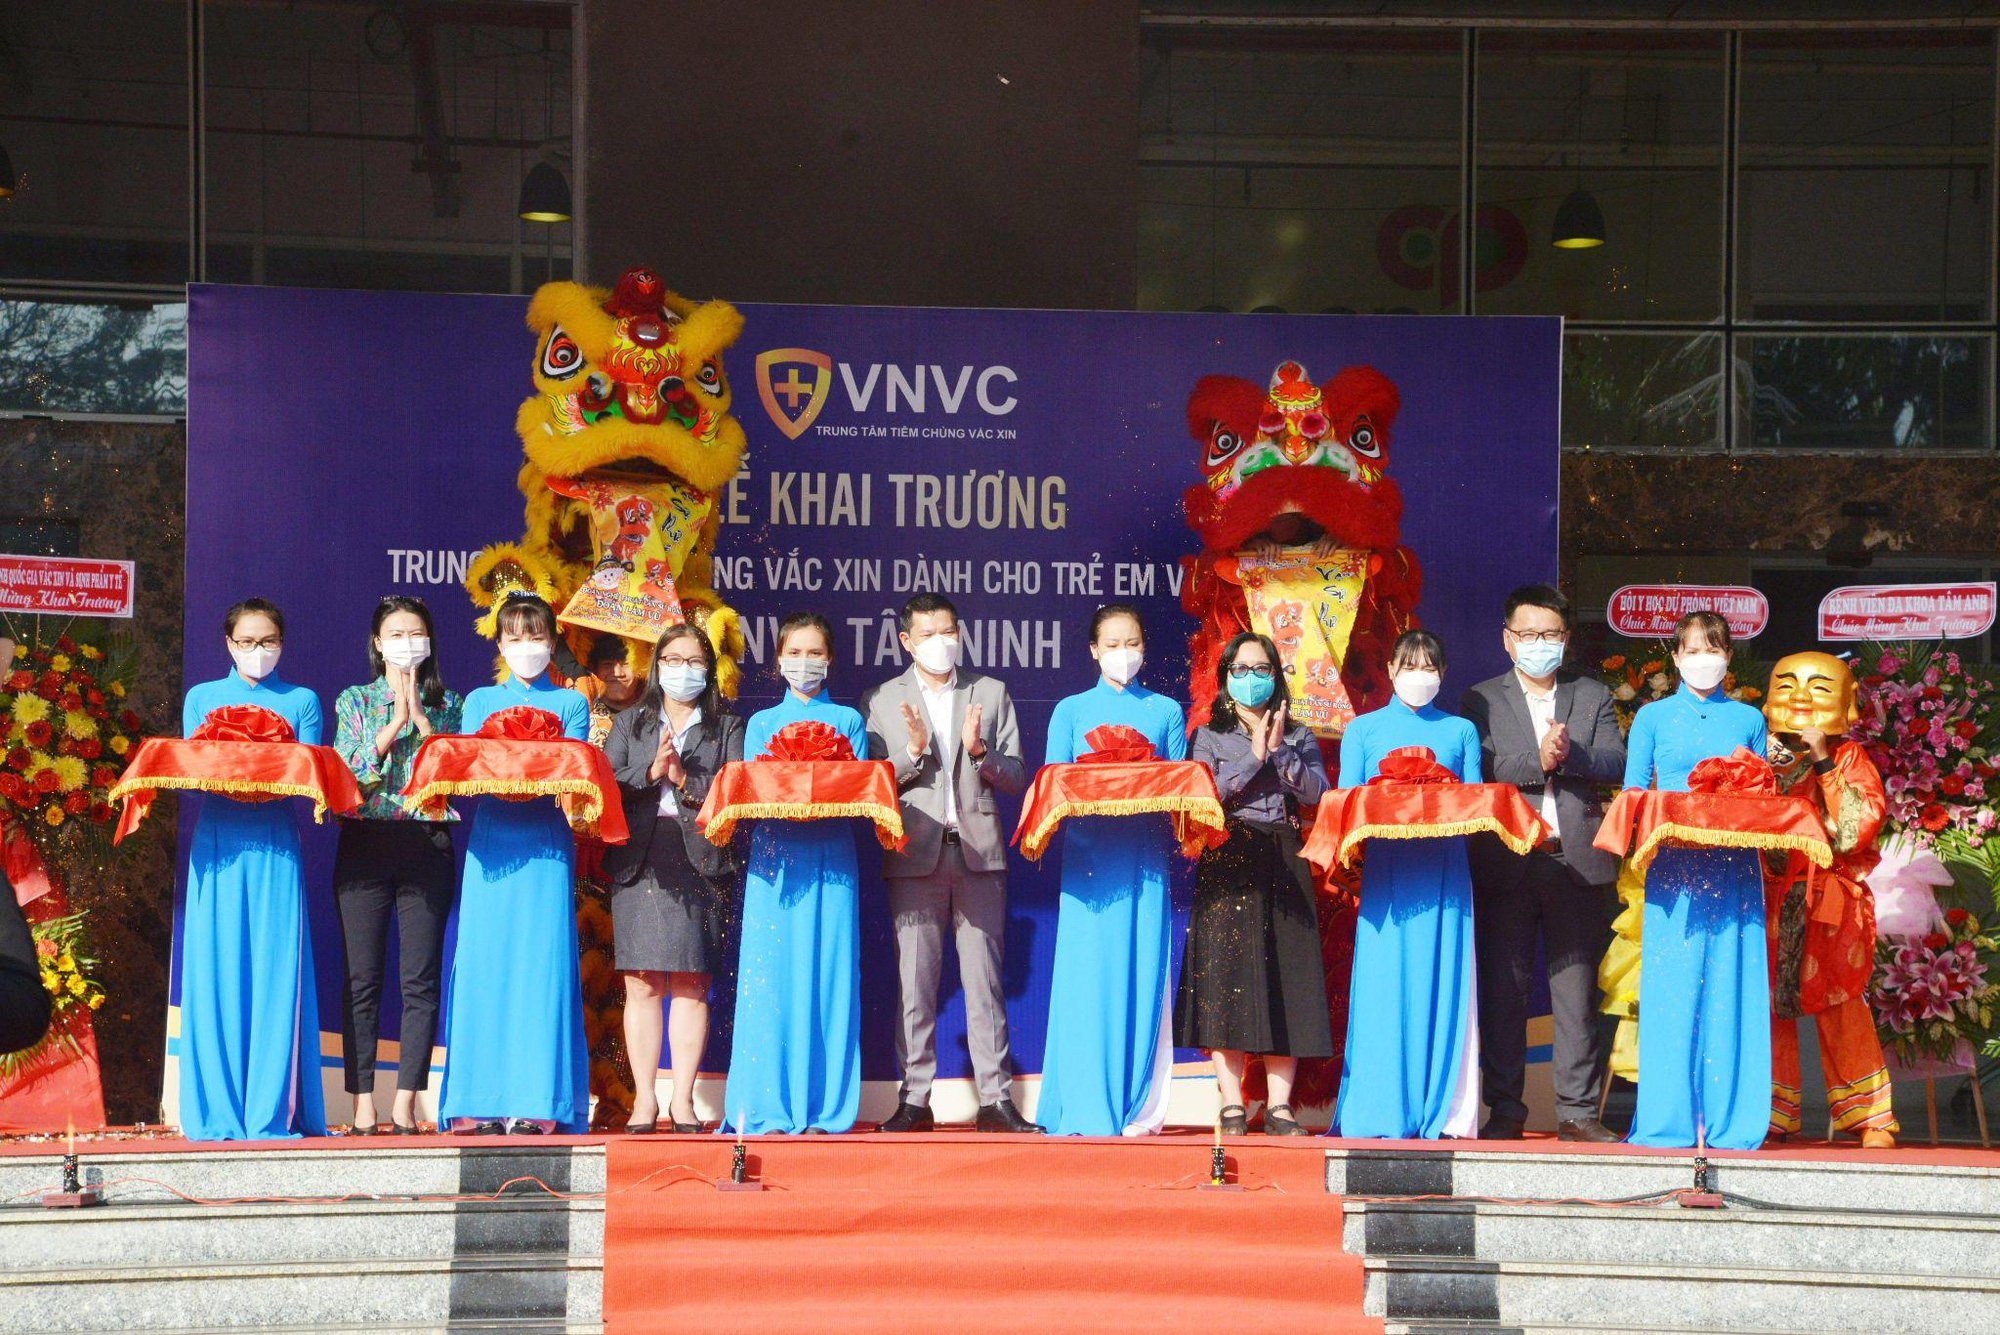  VNVC khai trương trung tâm thứ 58 tại Tây Ninh - Ảnh 1.